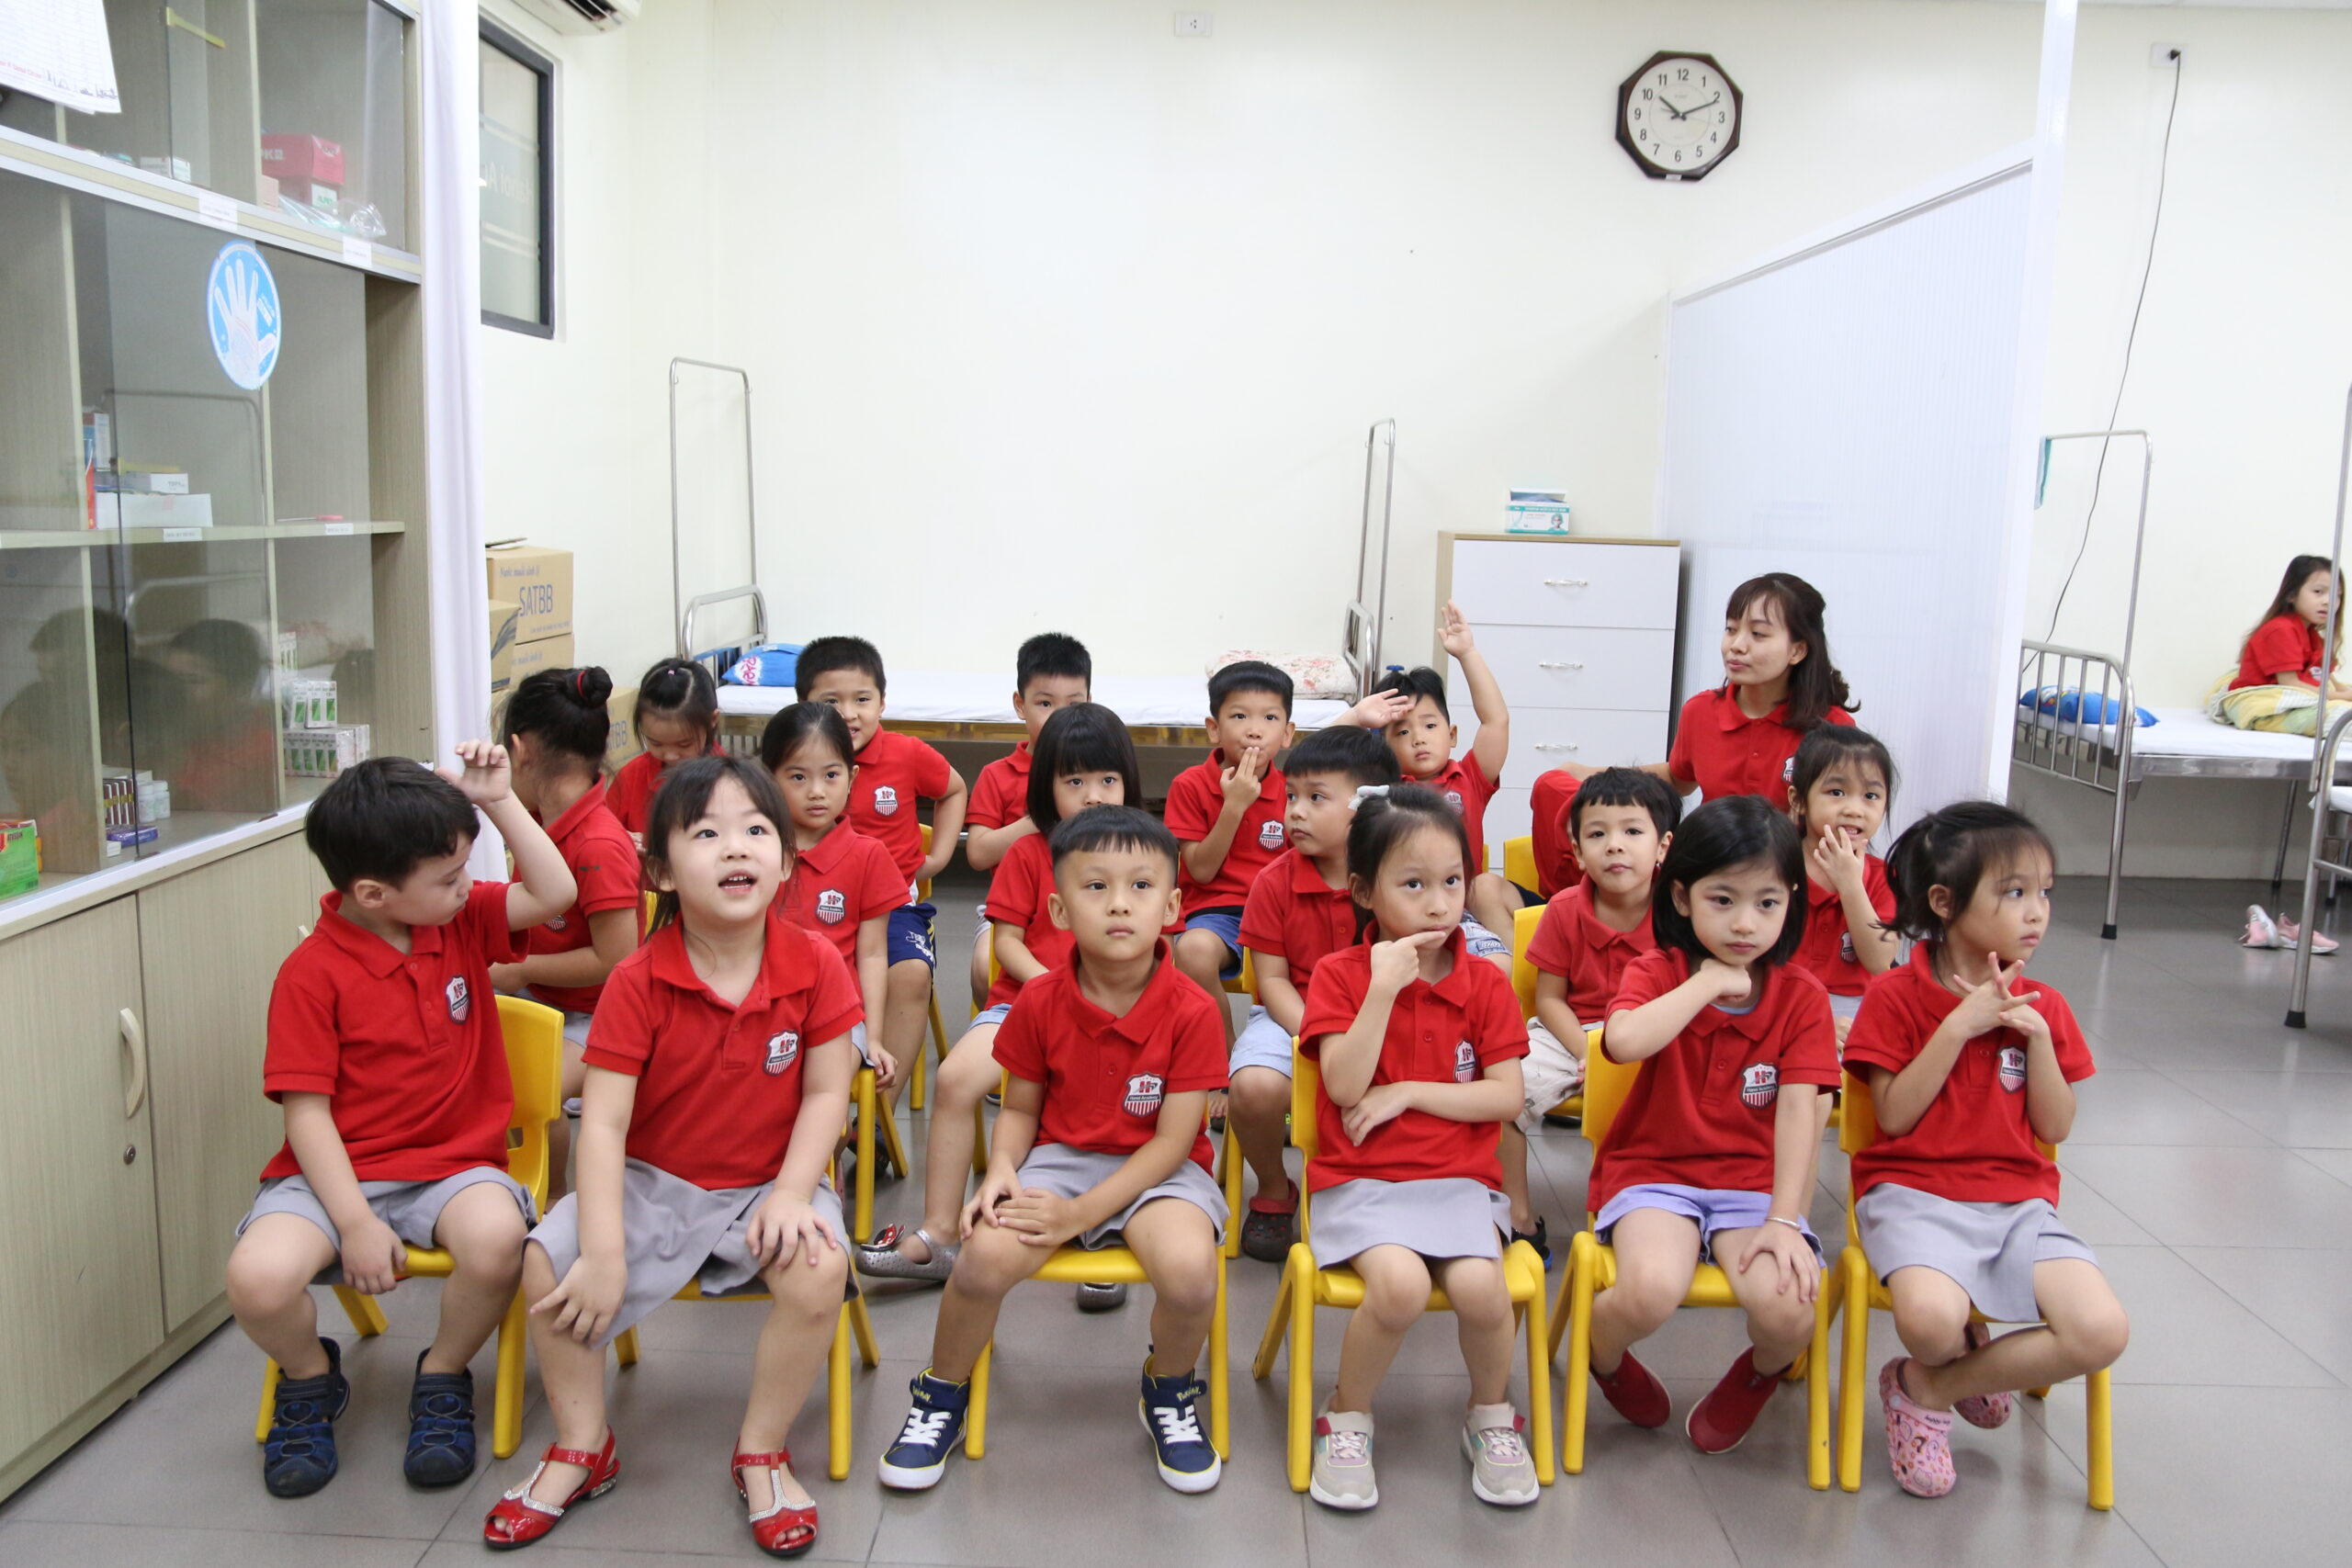 Phương pháp học theo dự án của Hanoi Academy có gì thú vị?